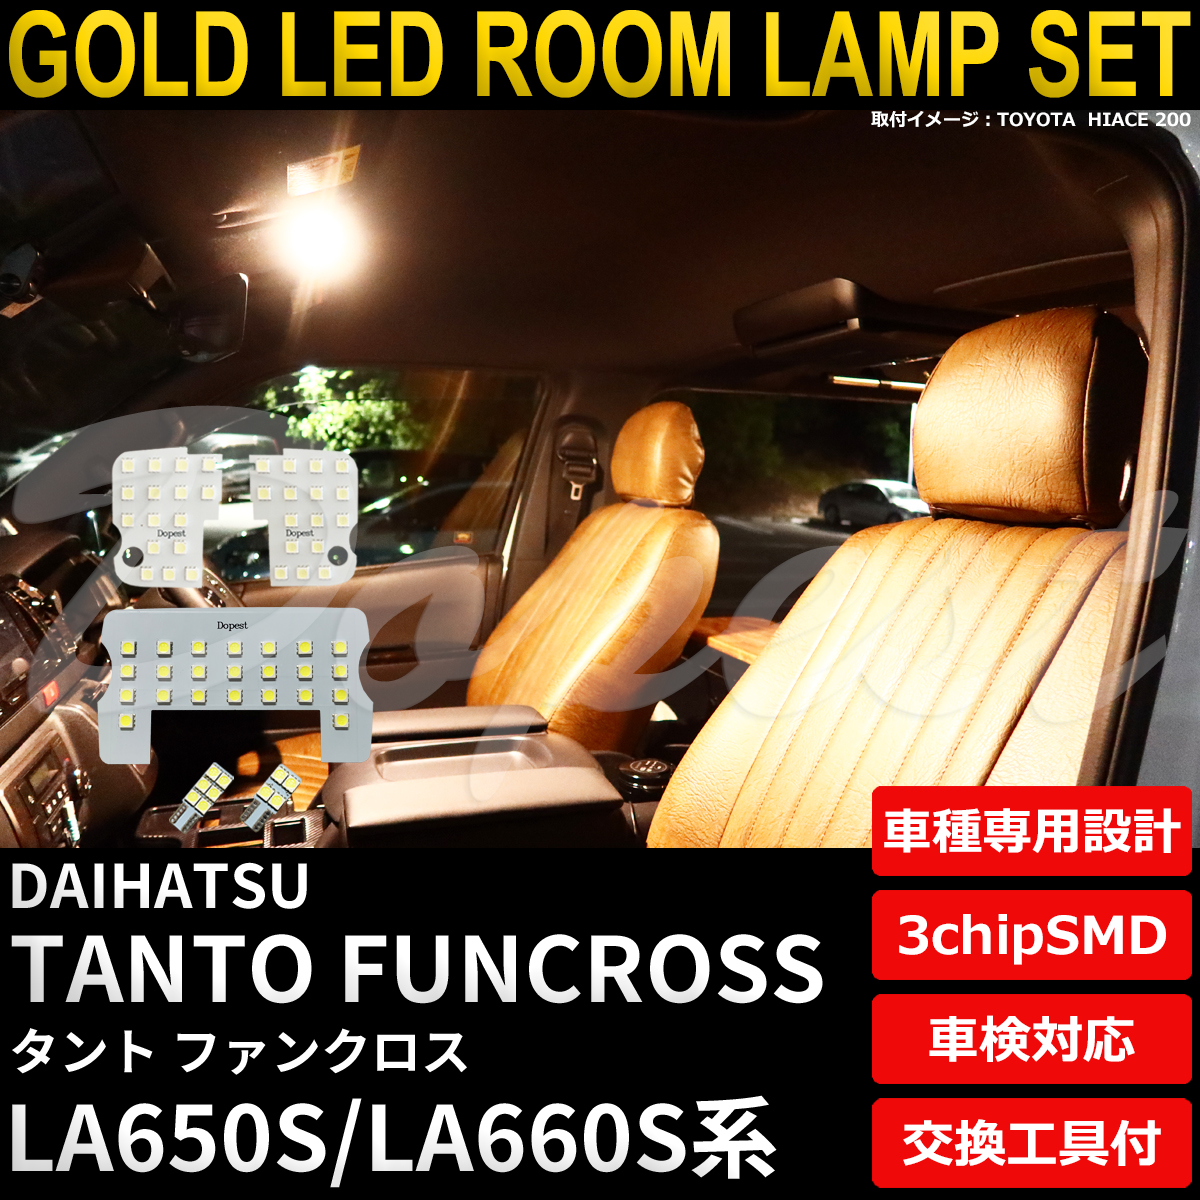 タント ファンクロス LEDルームランプセット LA650S/LA660S系 電球色